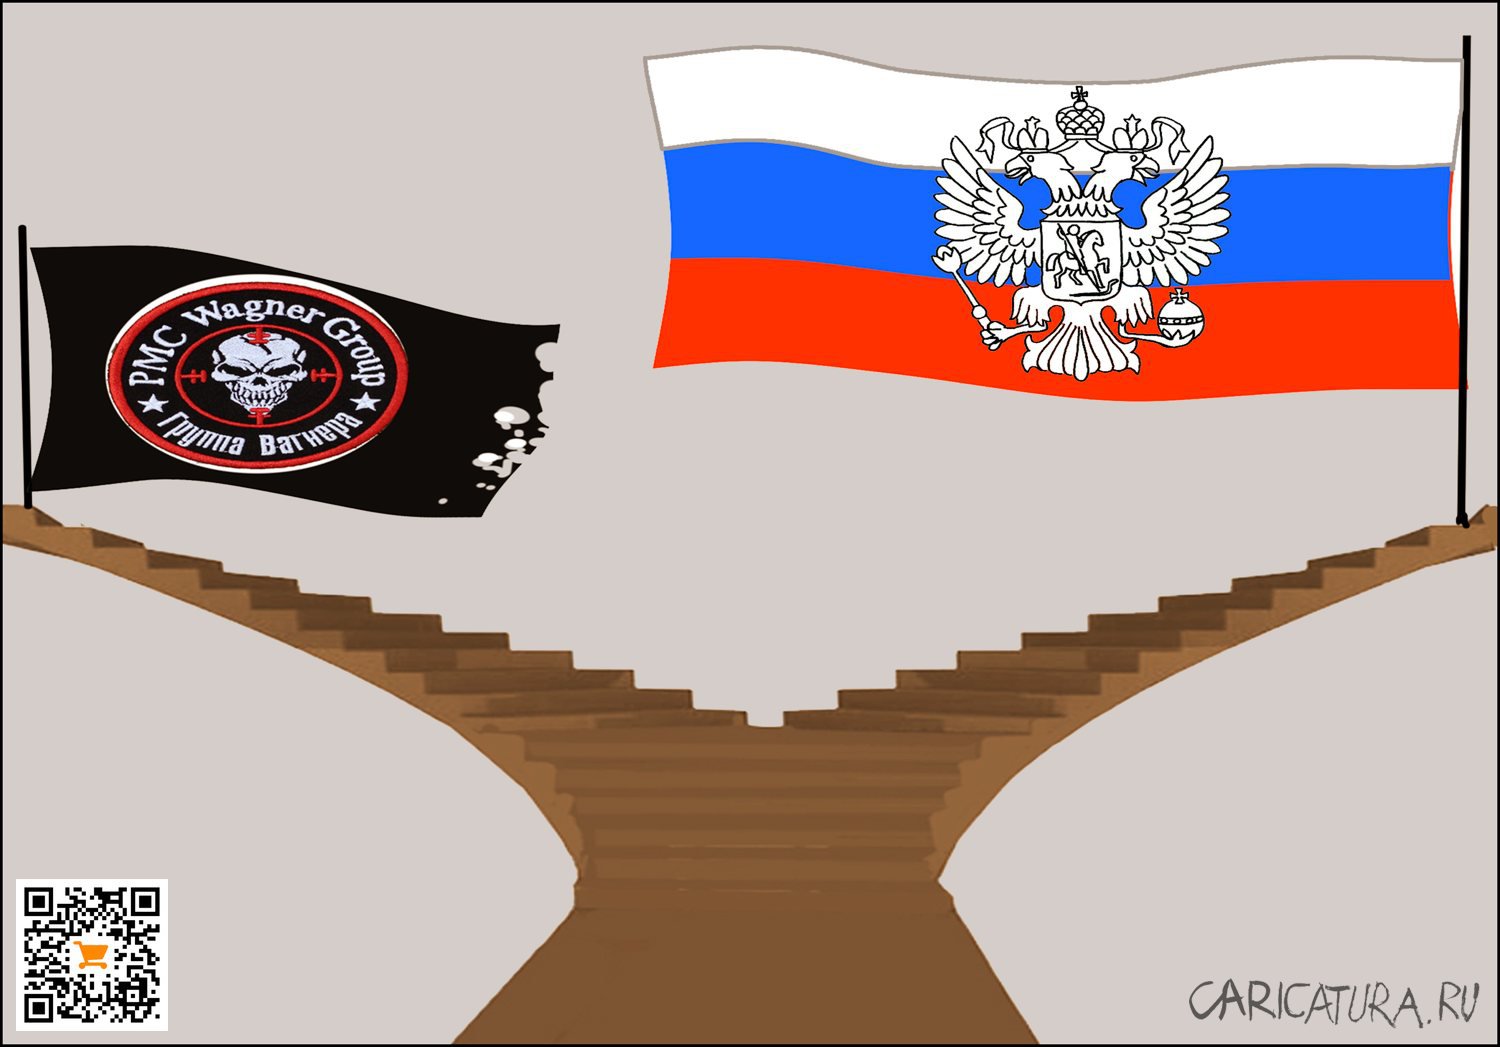 Карикатура "Пути-дорожки", Александр Уваров